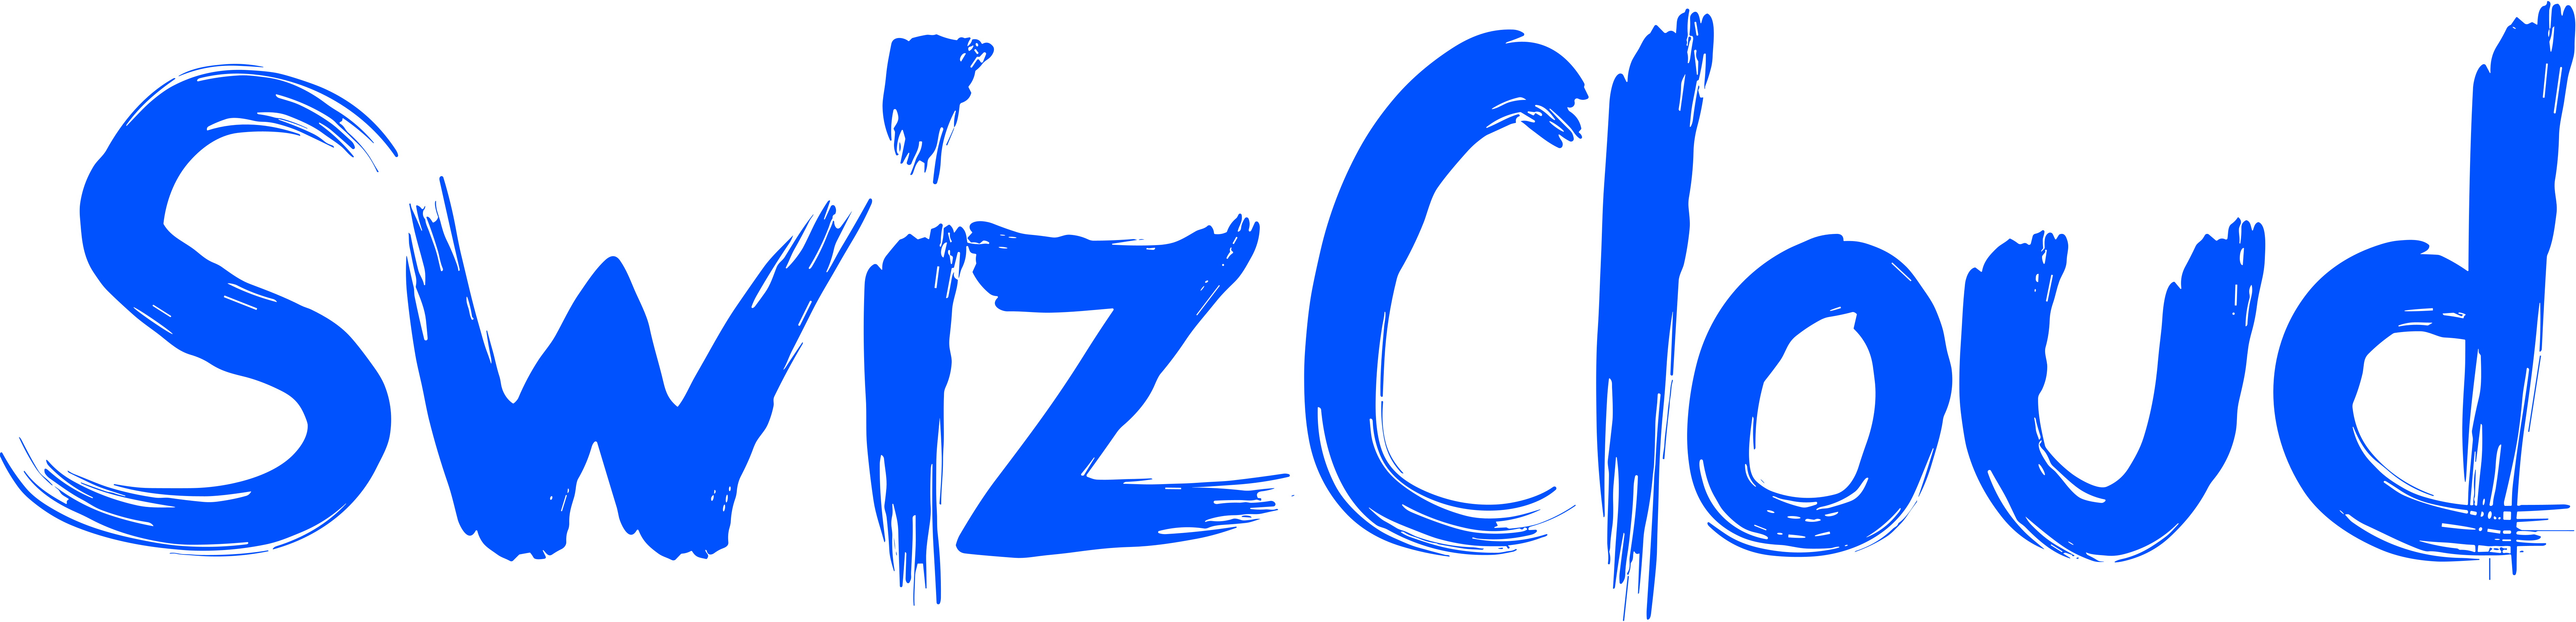 Bannière bleu de SwizCloud